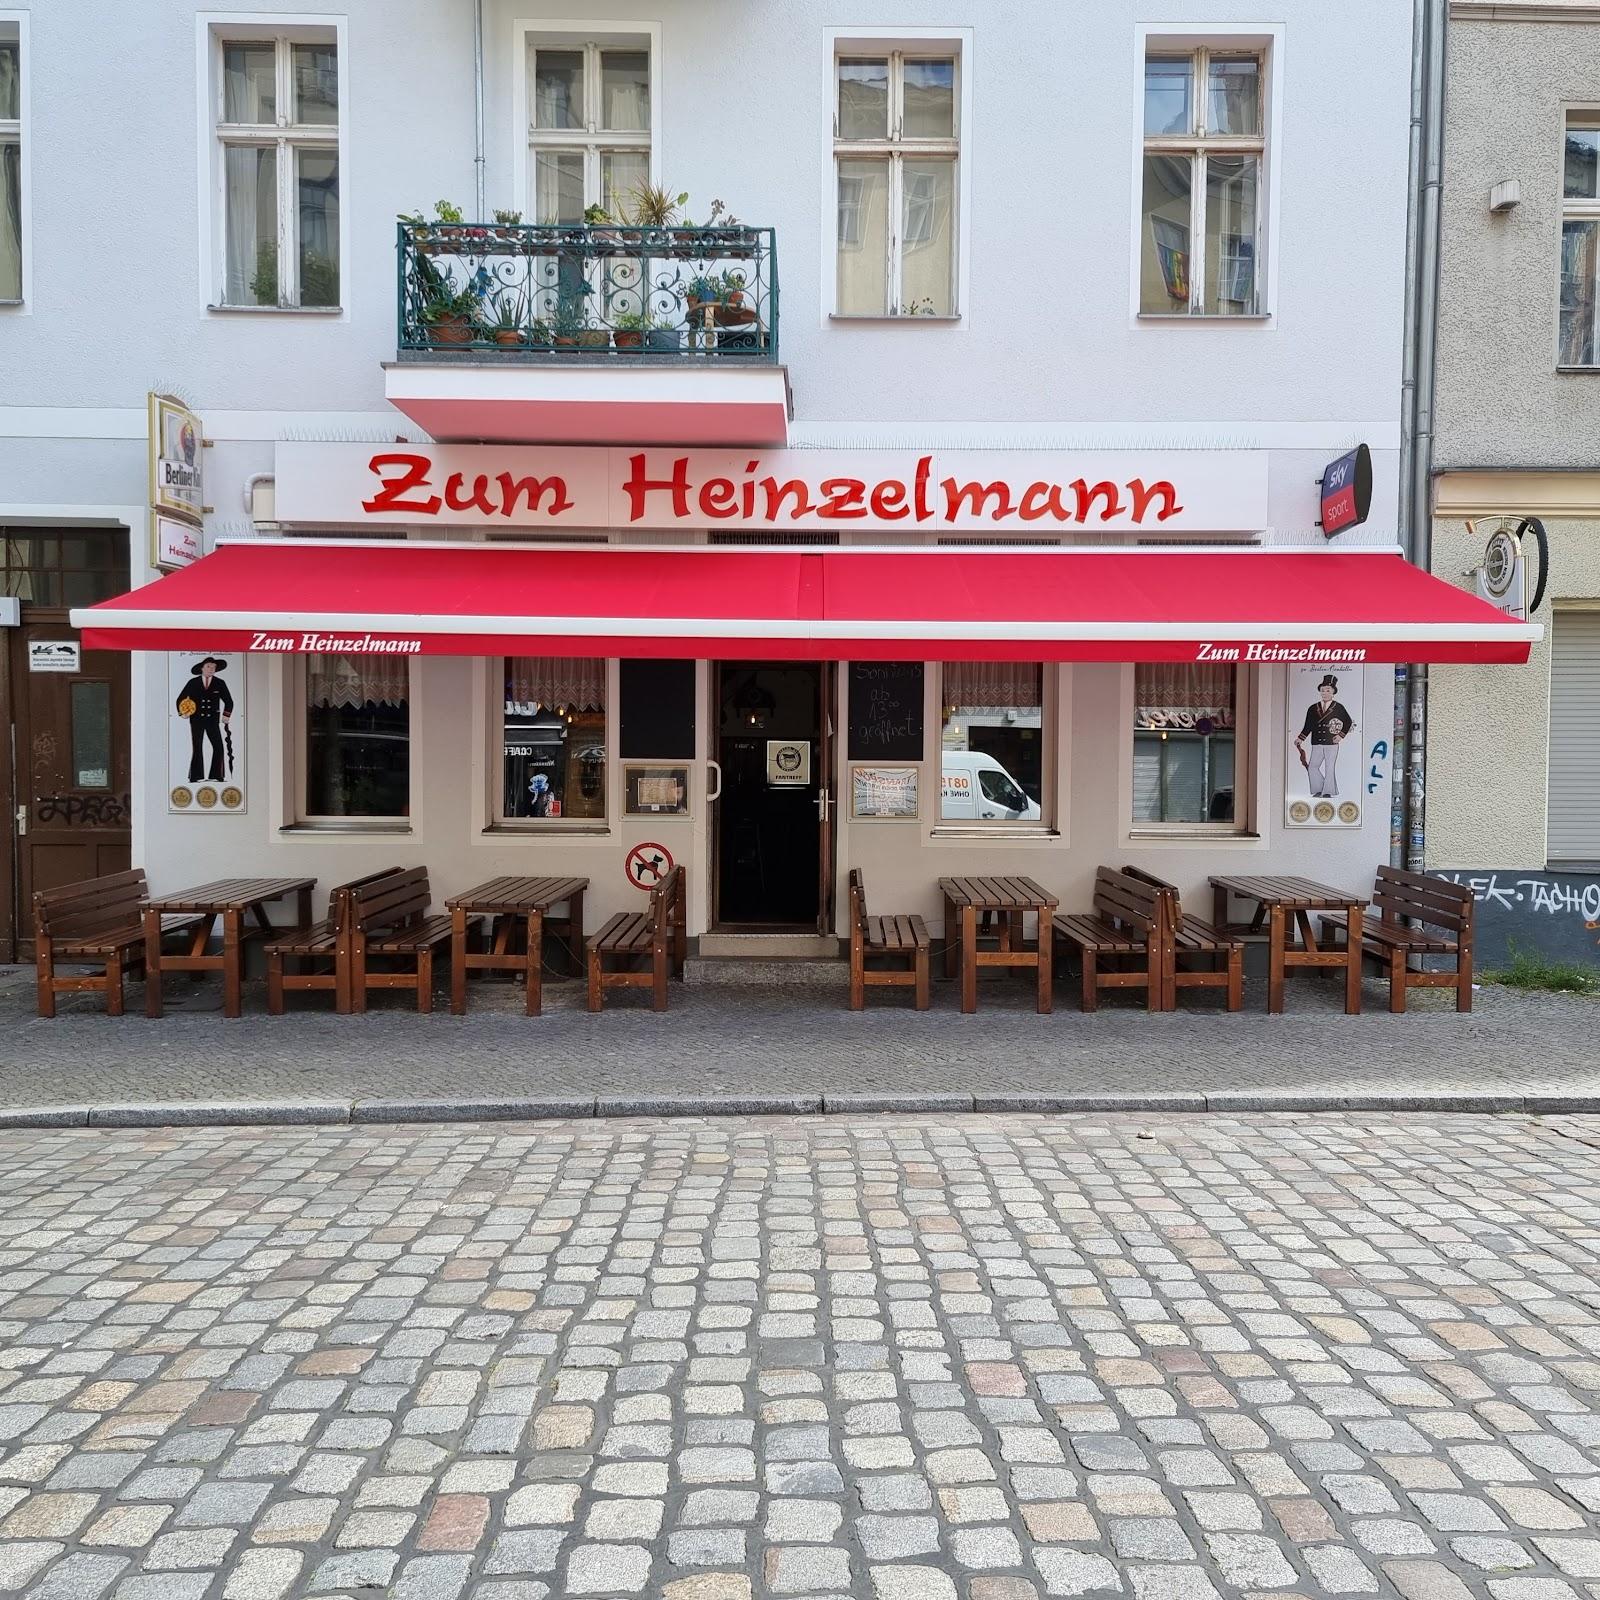 Restaurant "Gaststätte Zum Heinzelmann" in Berlin